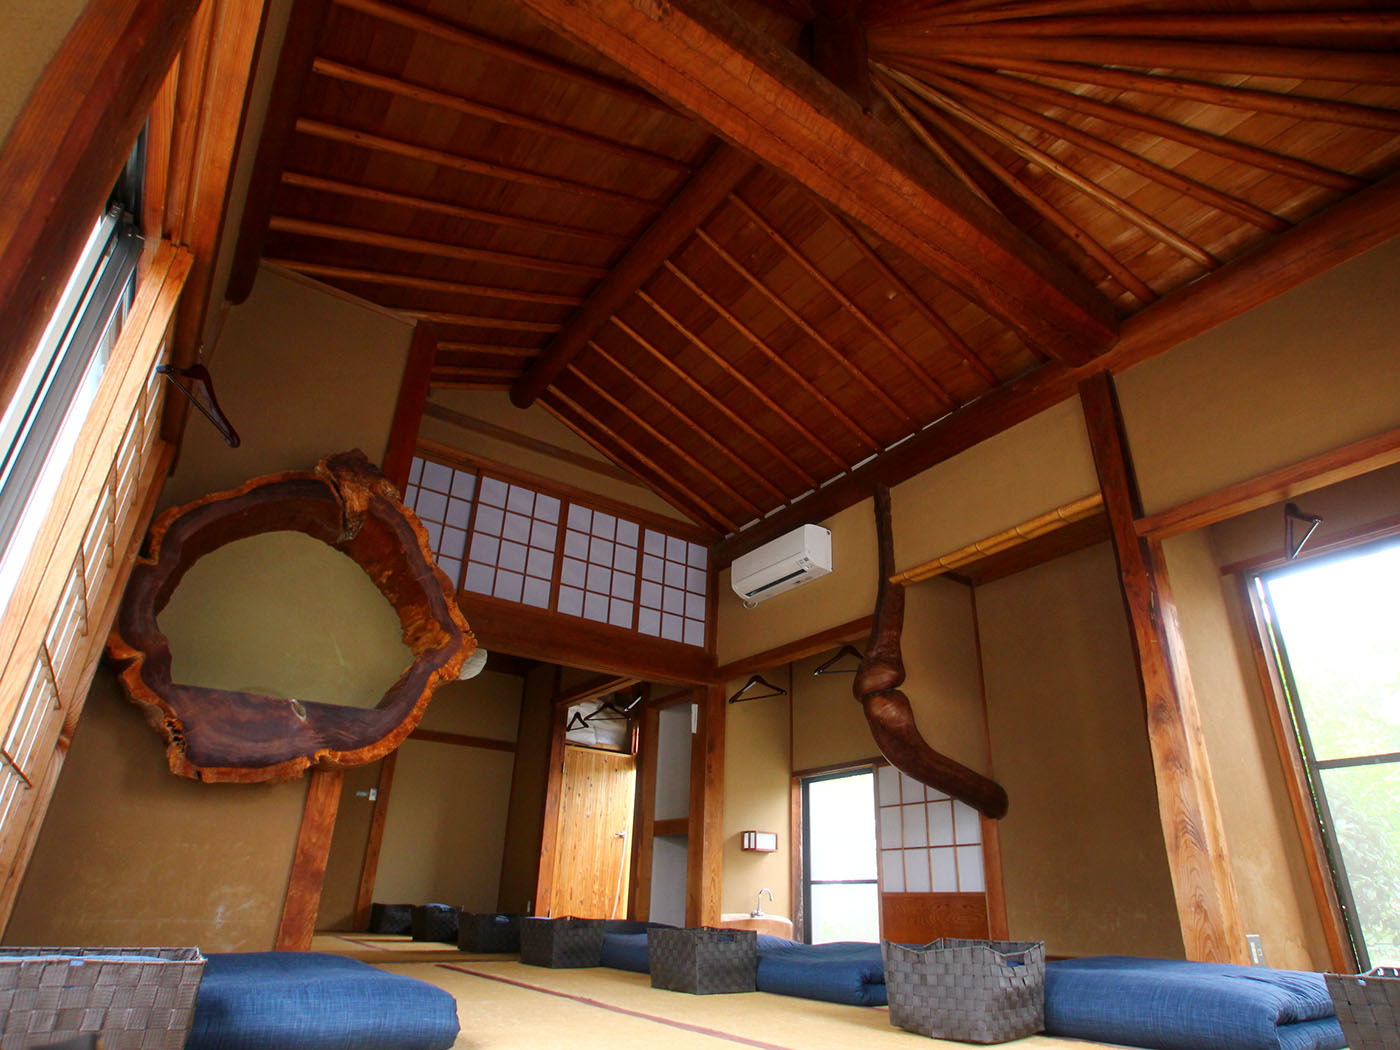 その安らぎは実家のように 囲炉裏のお宿 鎌倉ゲストハウス Shonan Garden 湘南ガーデン